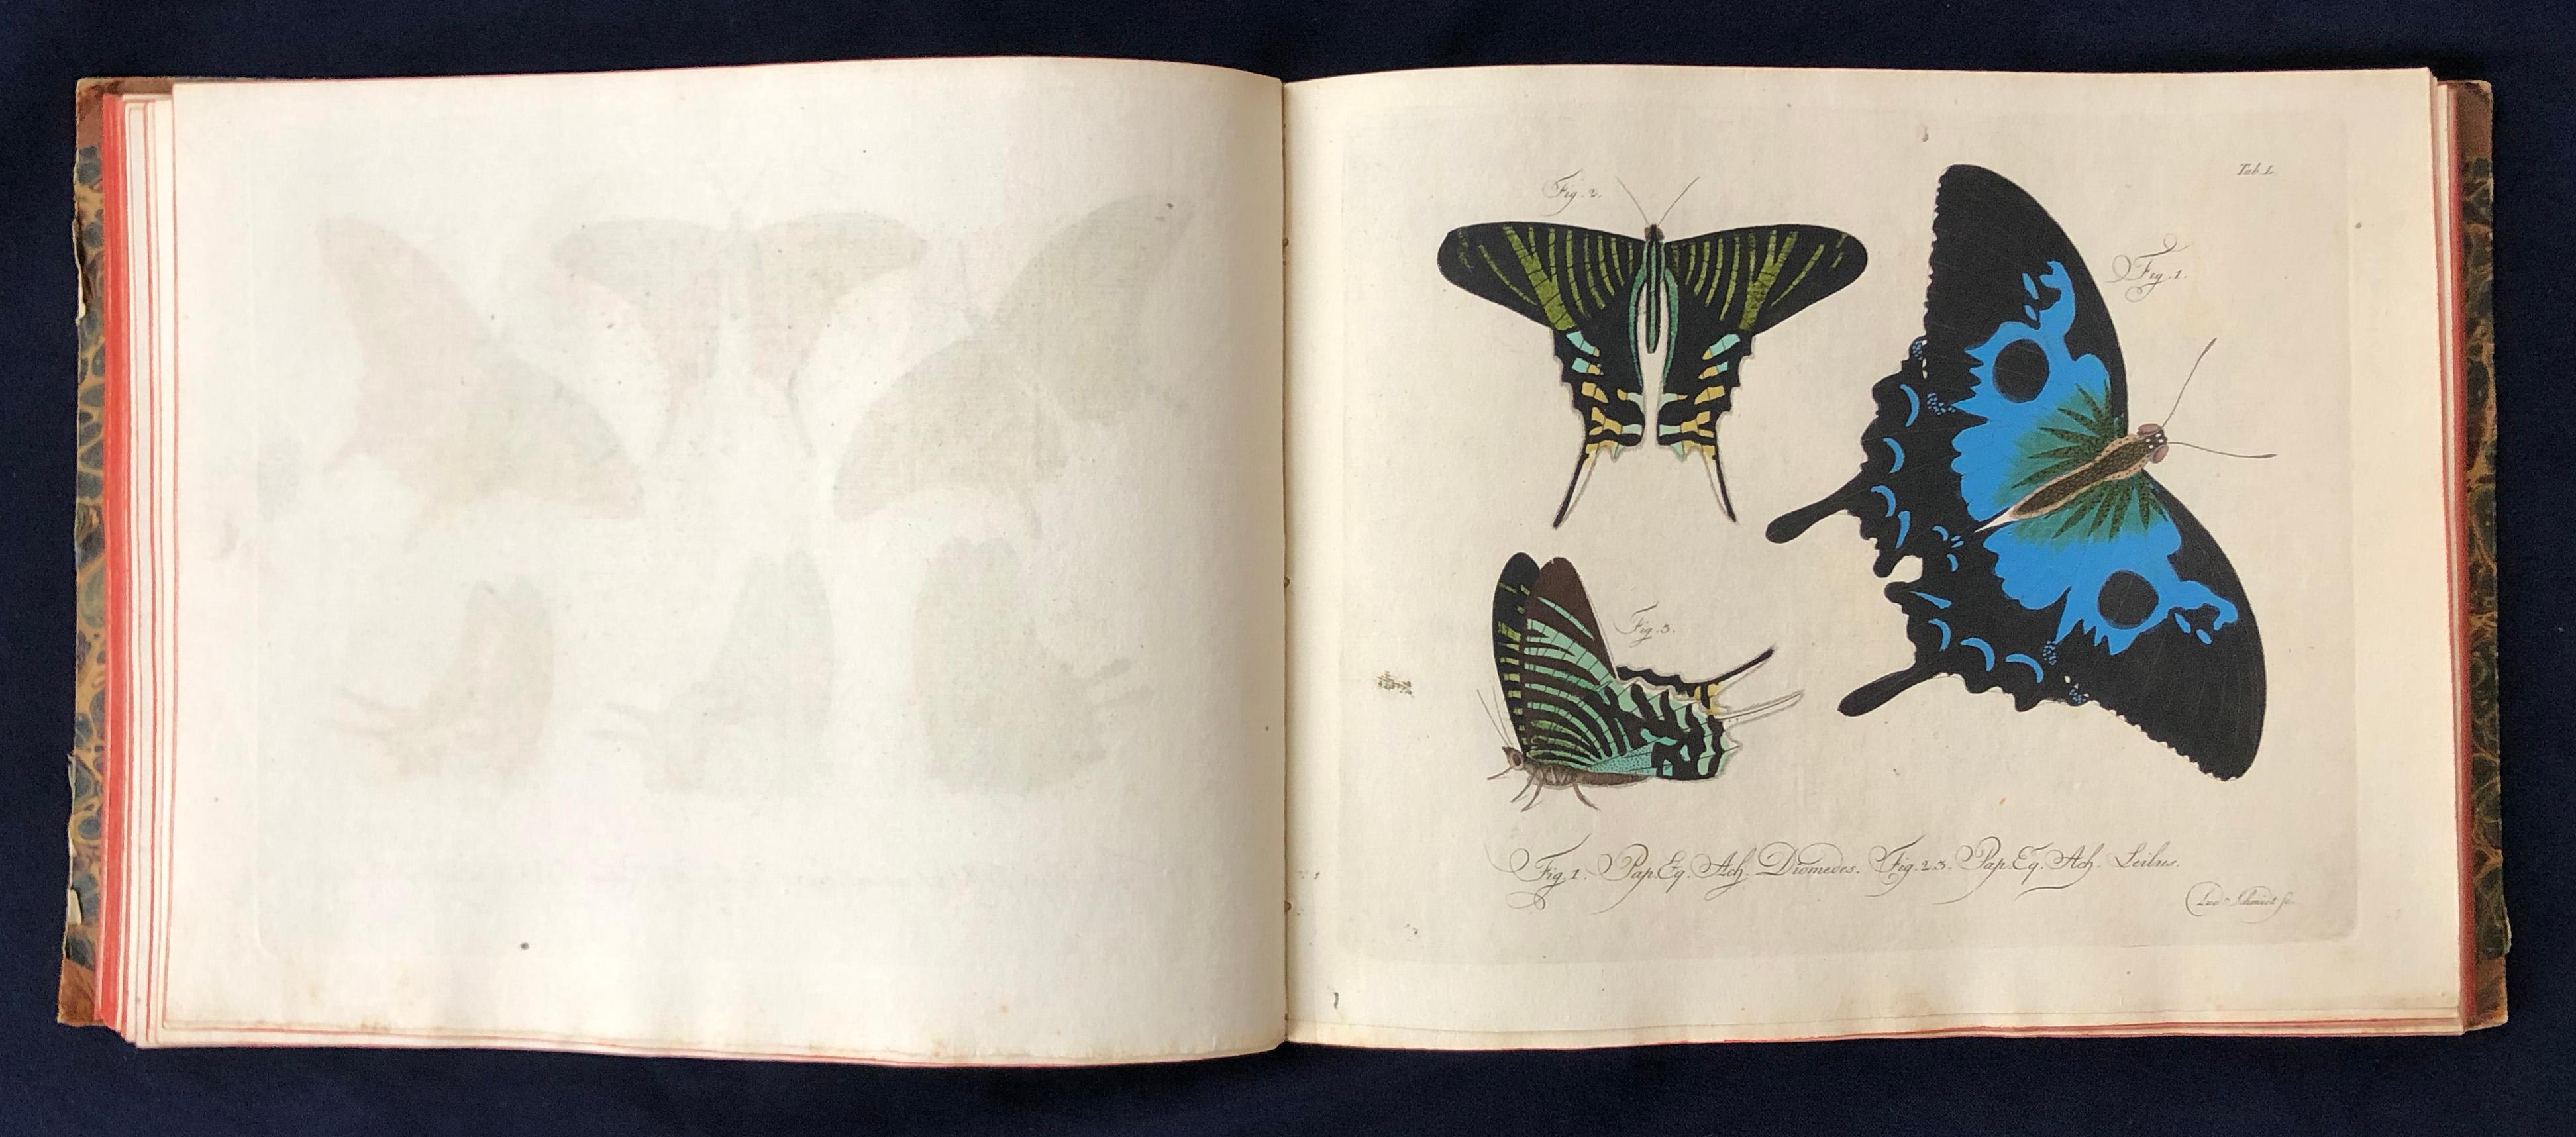 Schmetterlinge 'Butterflies' by Carl Gustav Jablonsky  & J.F.W. Herbst For Sale 4